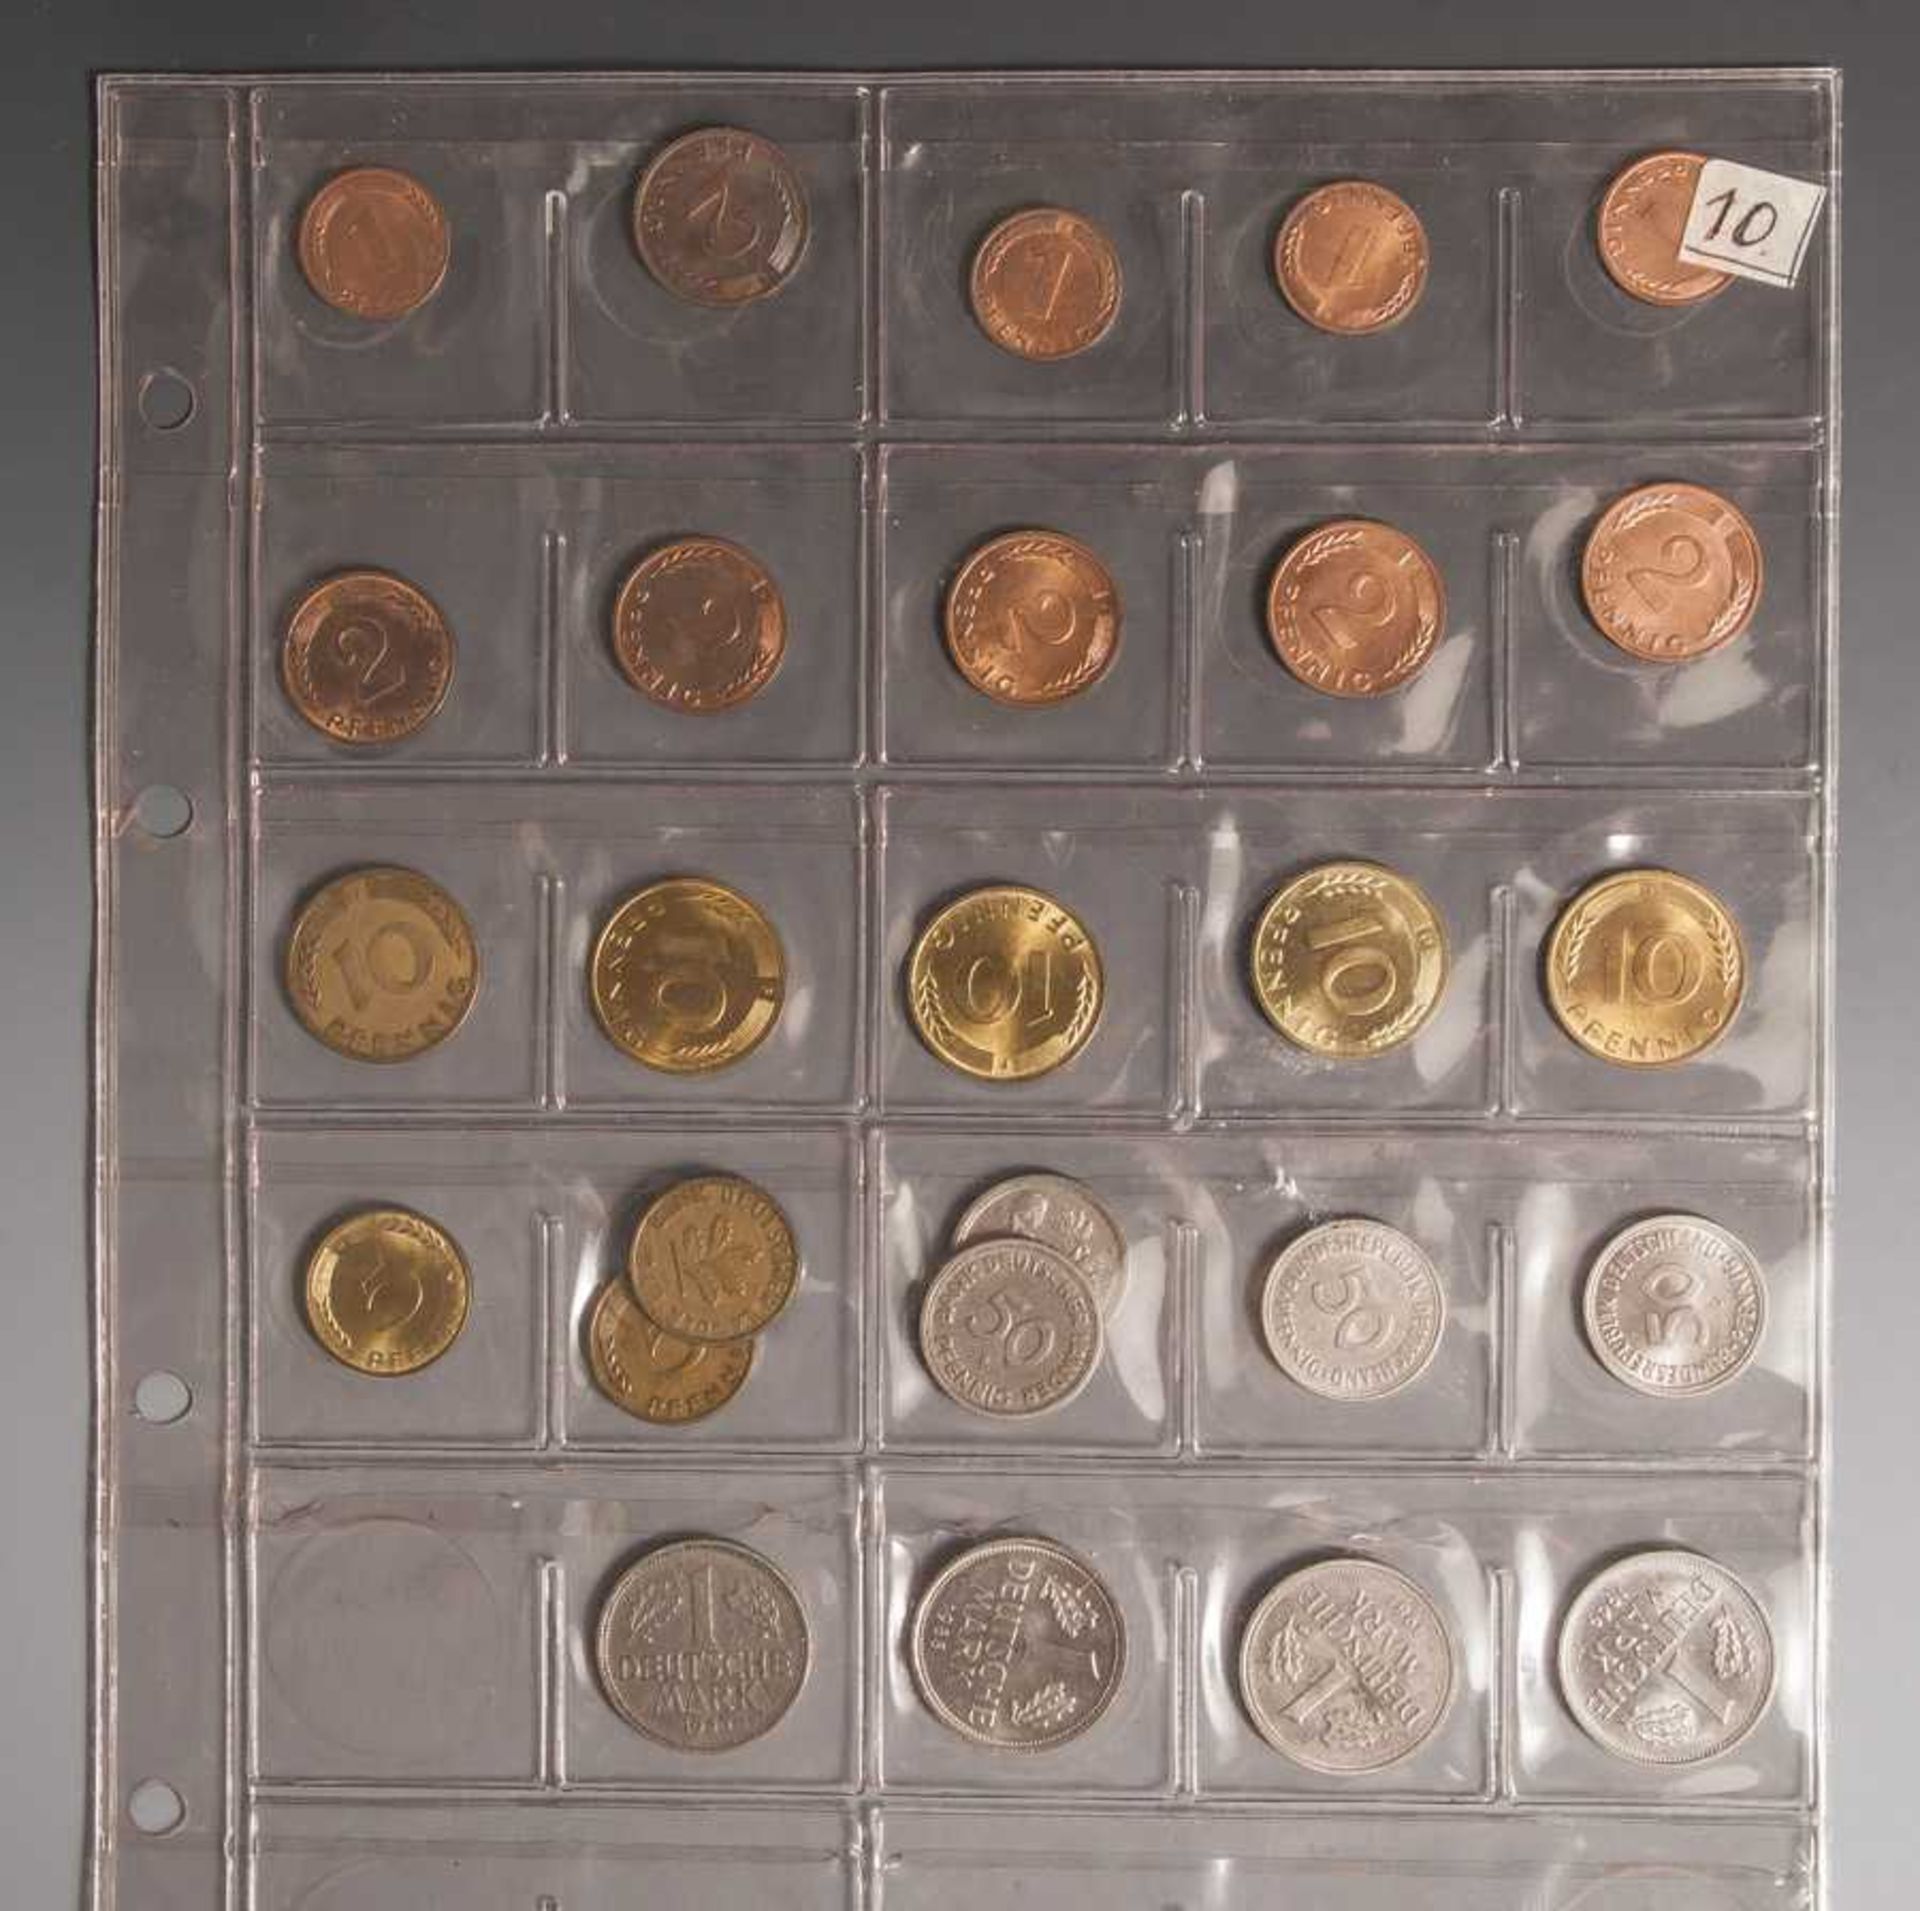 Konvolut Münzen, BRD: 4 x DM 0,01, 6 x DM 0,02, 3 x DM 0,05, 5 x DM 0,10, 4 x DM 0,50, 4 xDM 1.